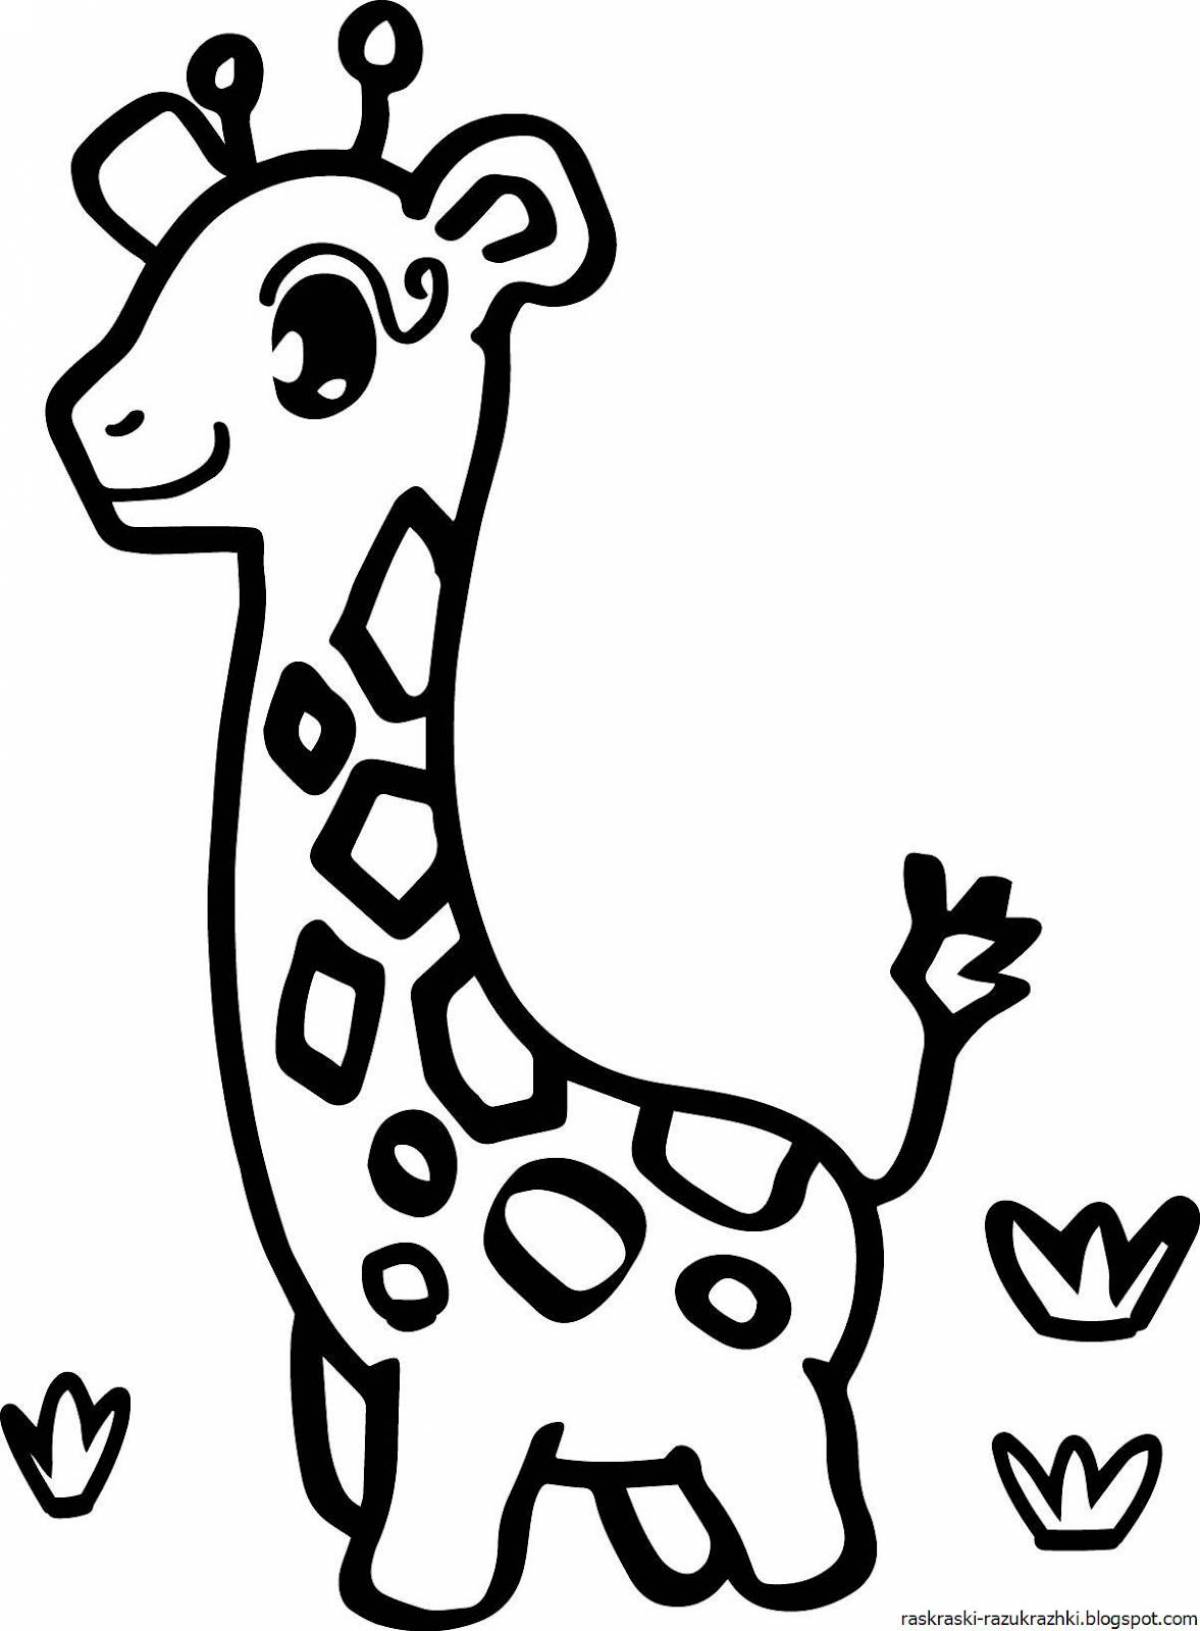 Zany giraffe coloring book for kids